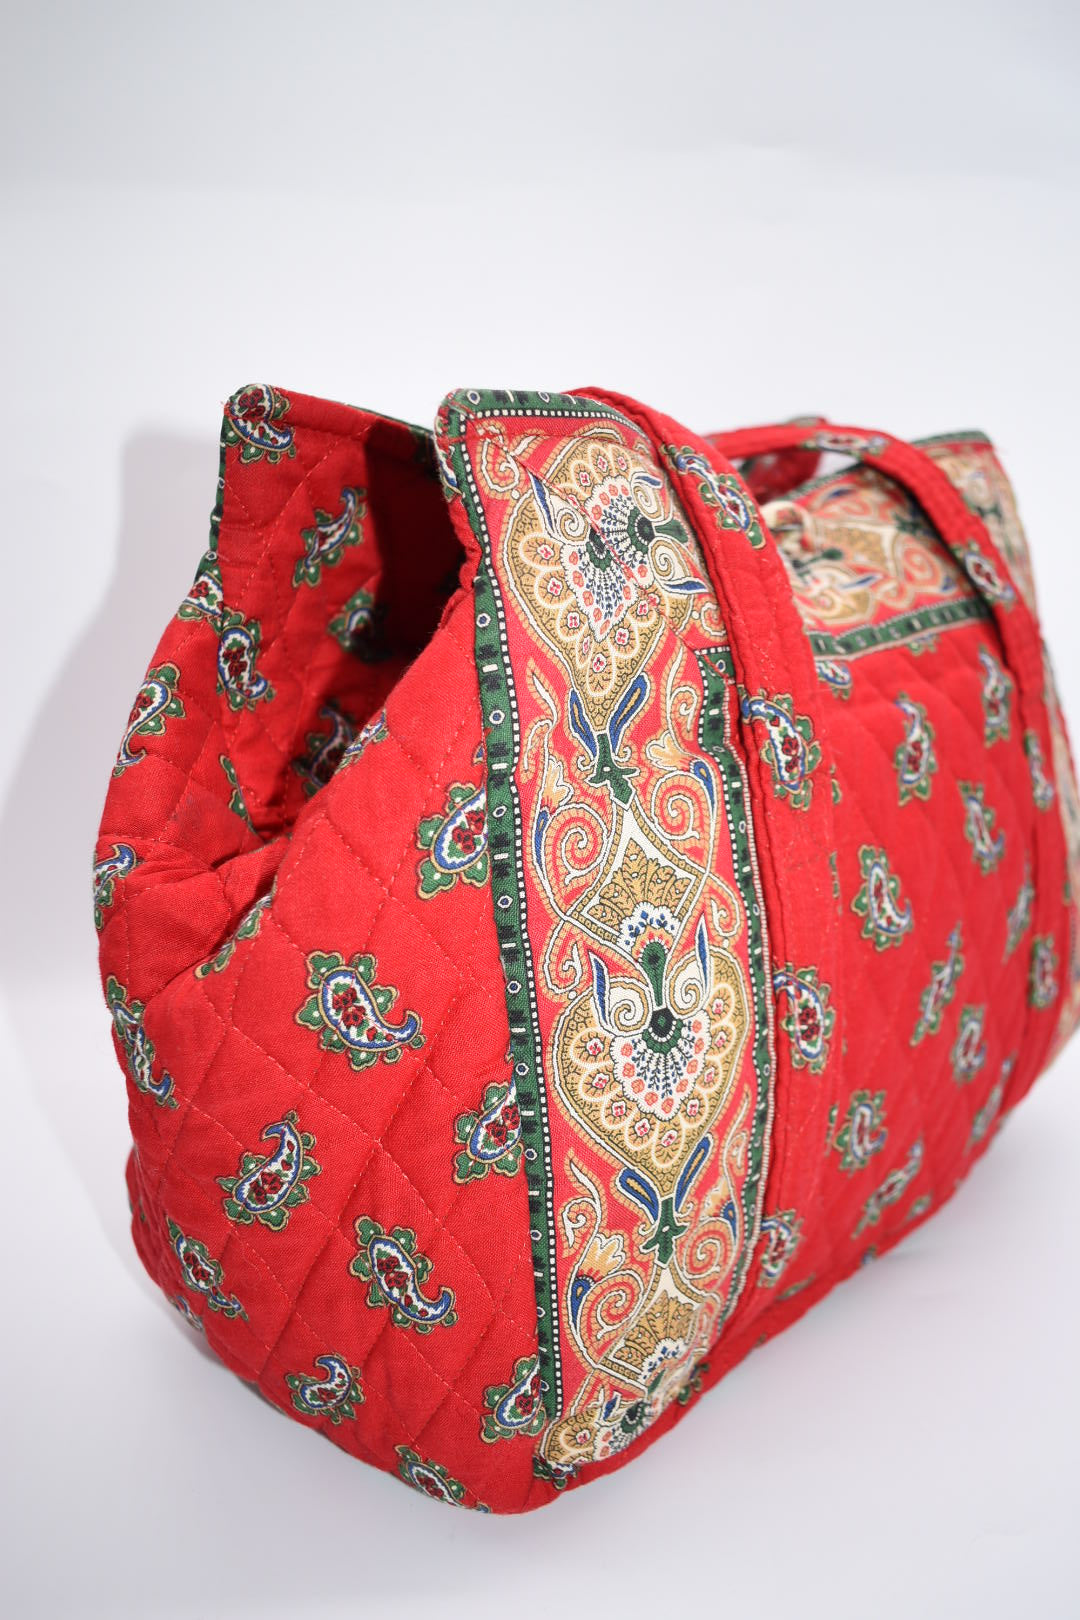 Vintage Vera Bradley Hoosier Shoulder Bag in "Red 1991" Pattern